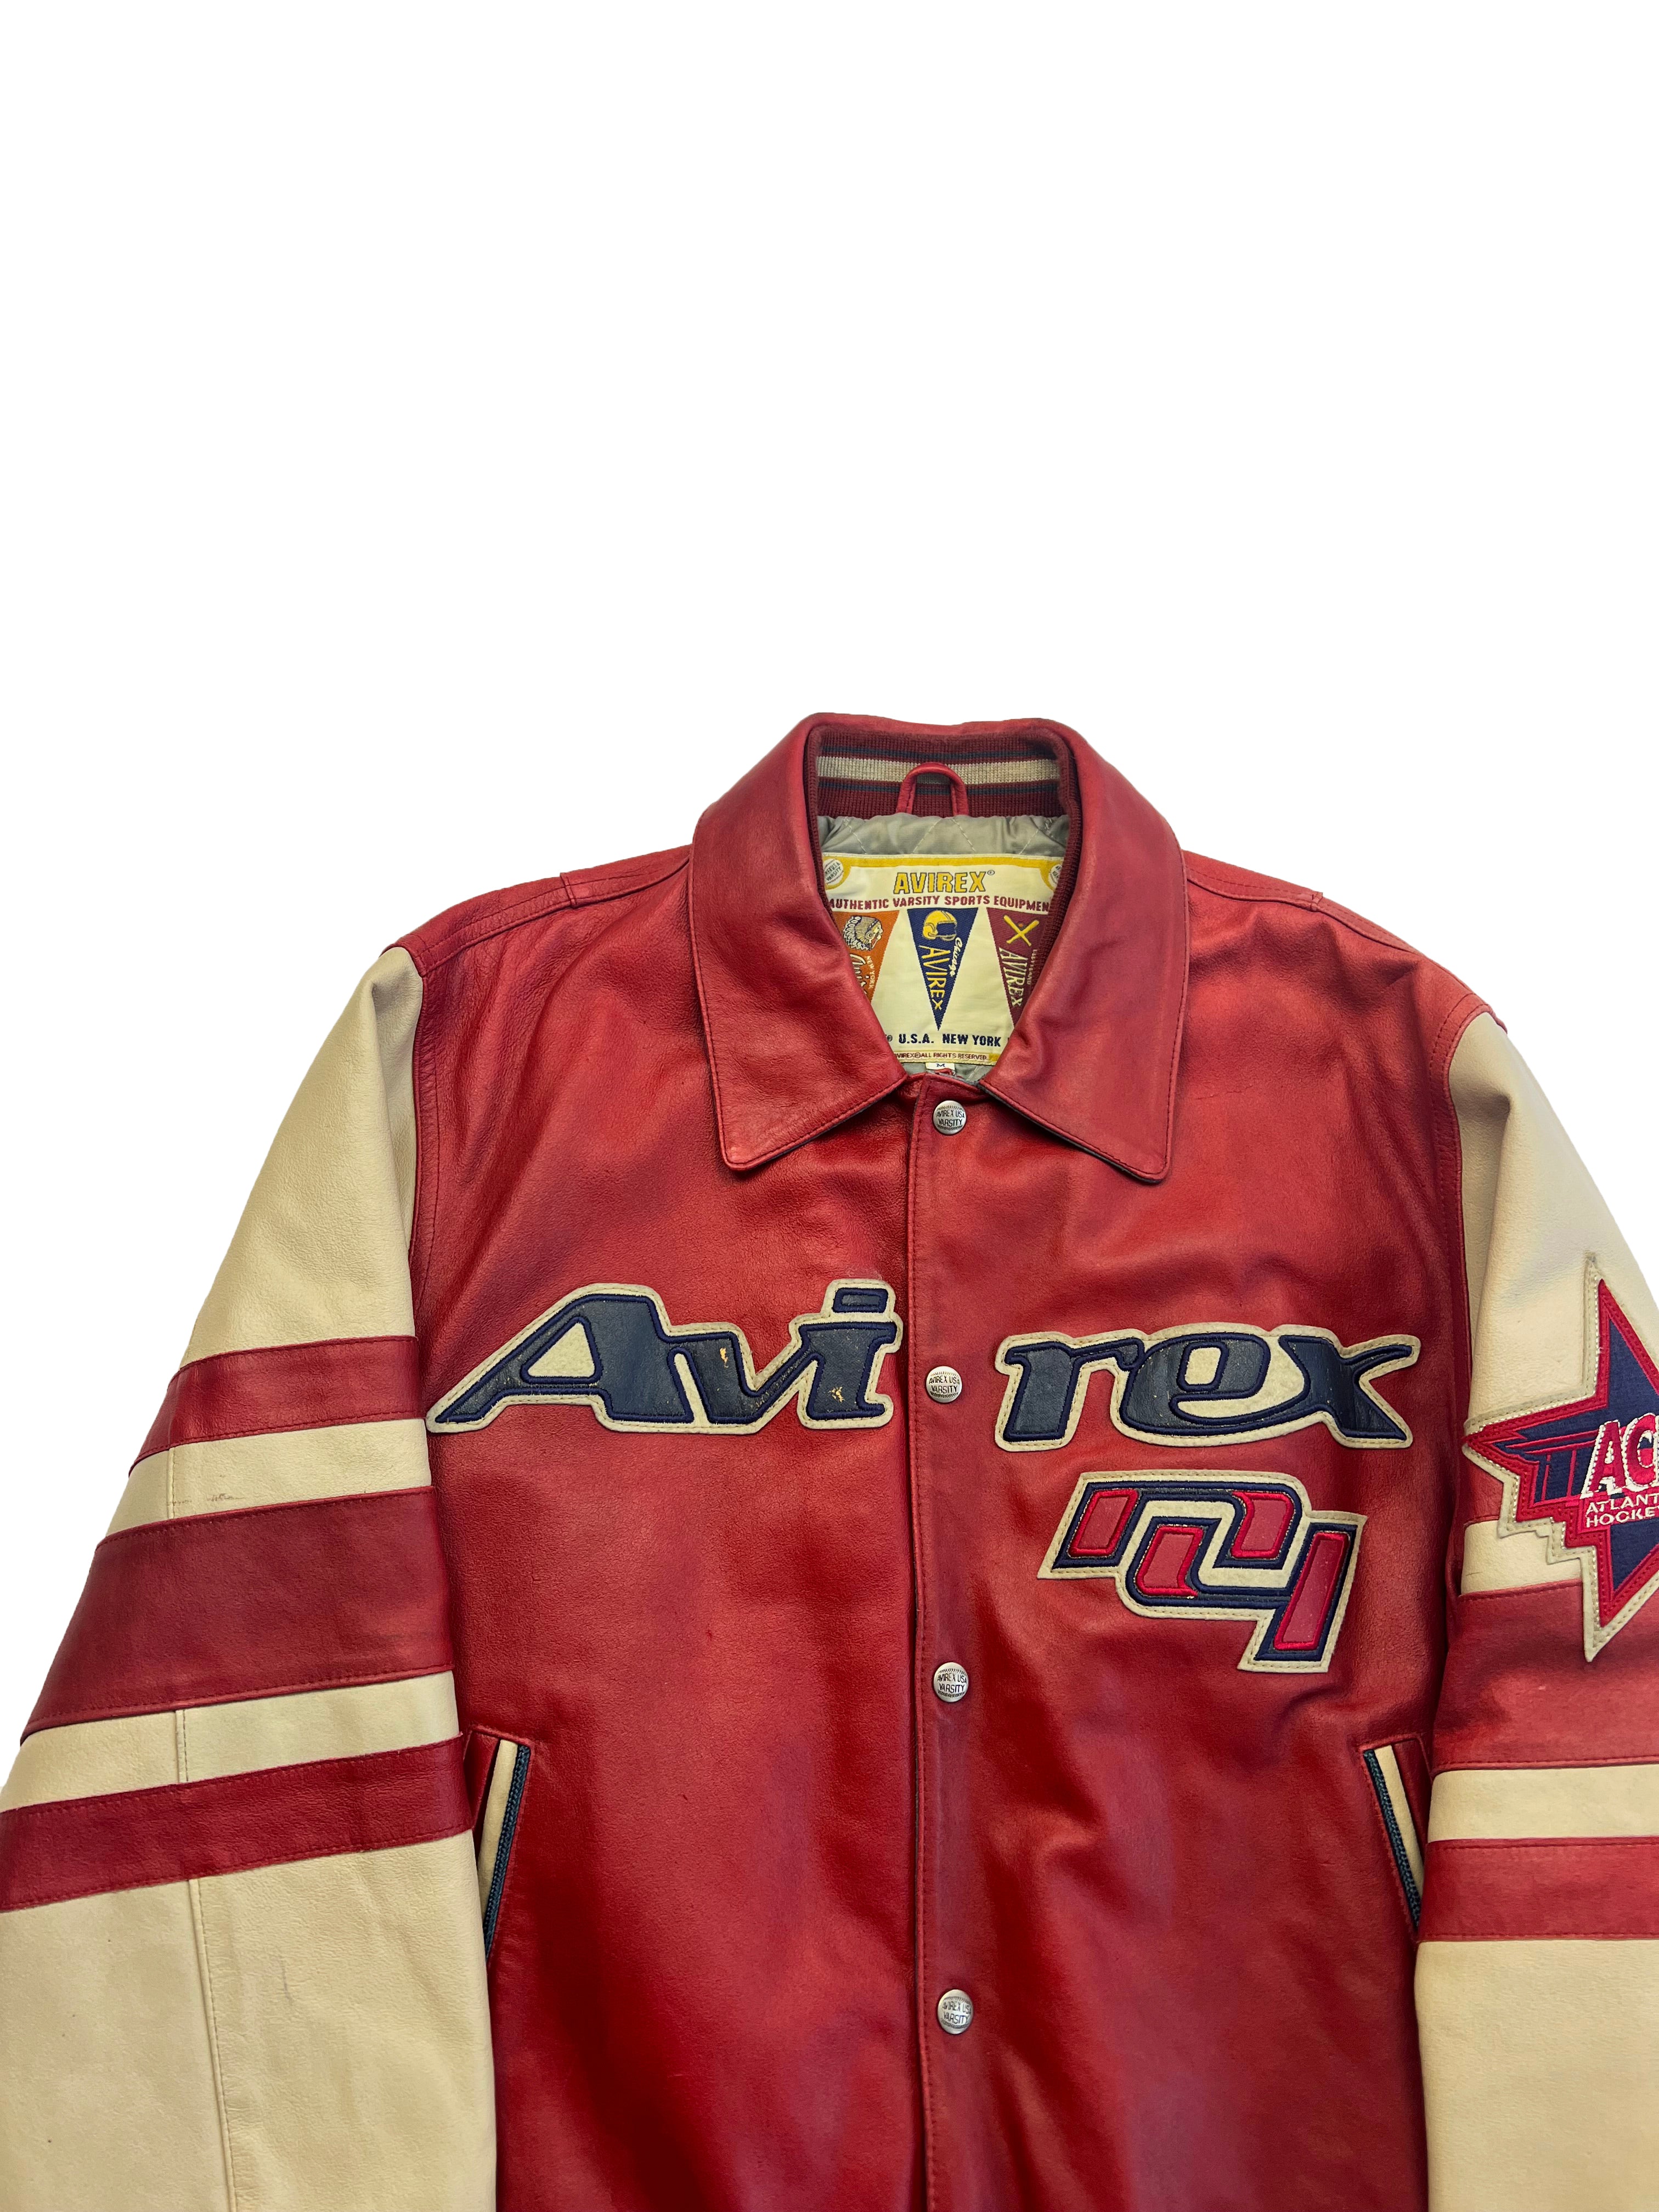 Avirex 'Goalers' Leather Jacket 90's